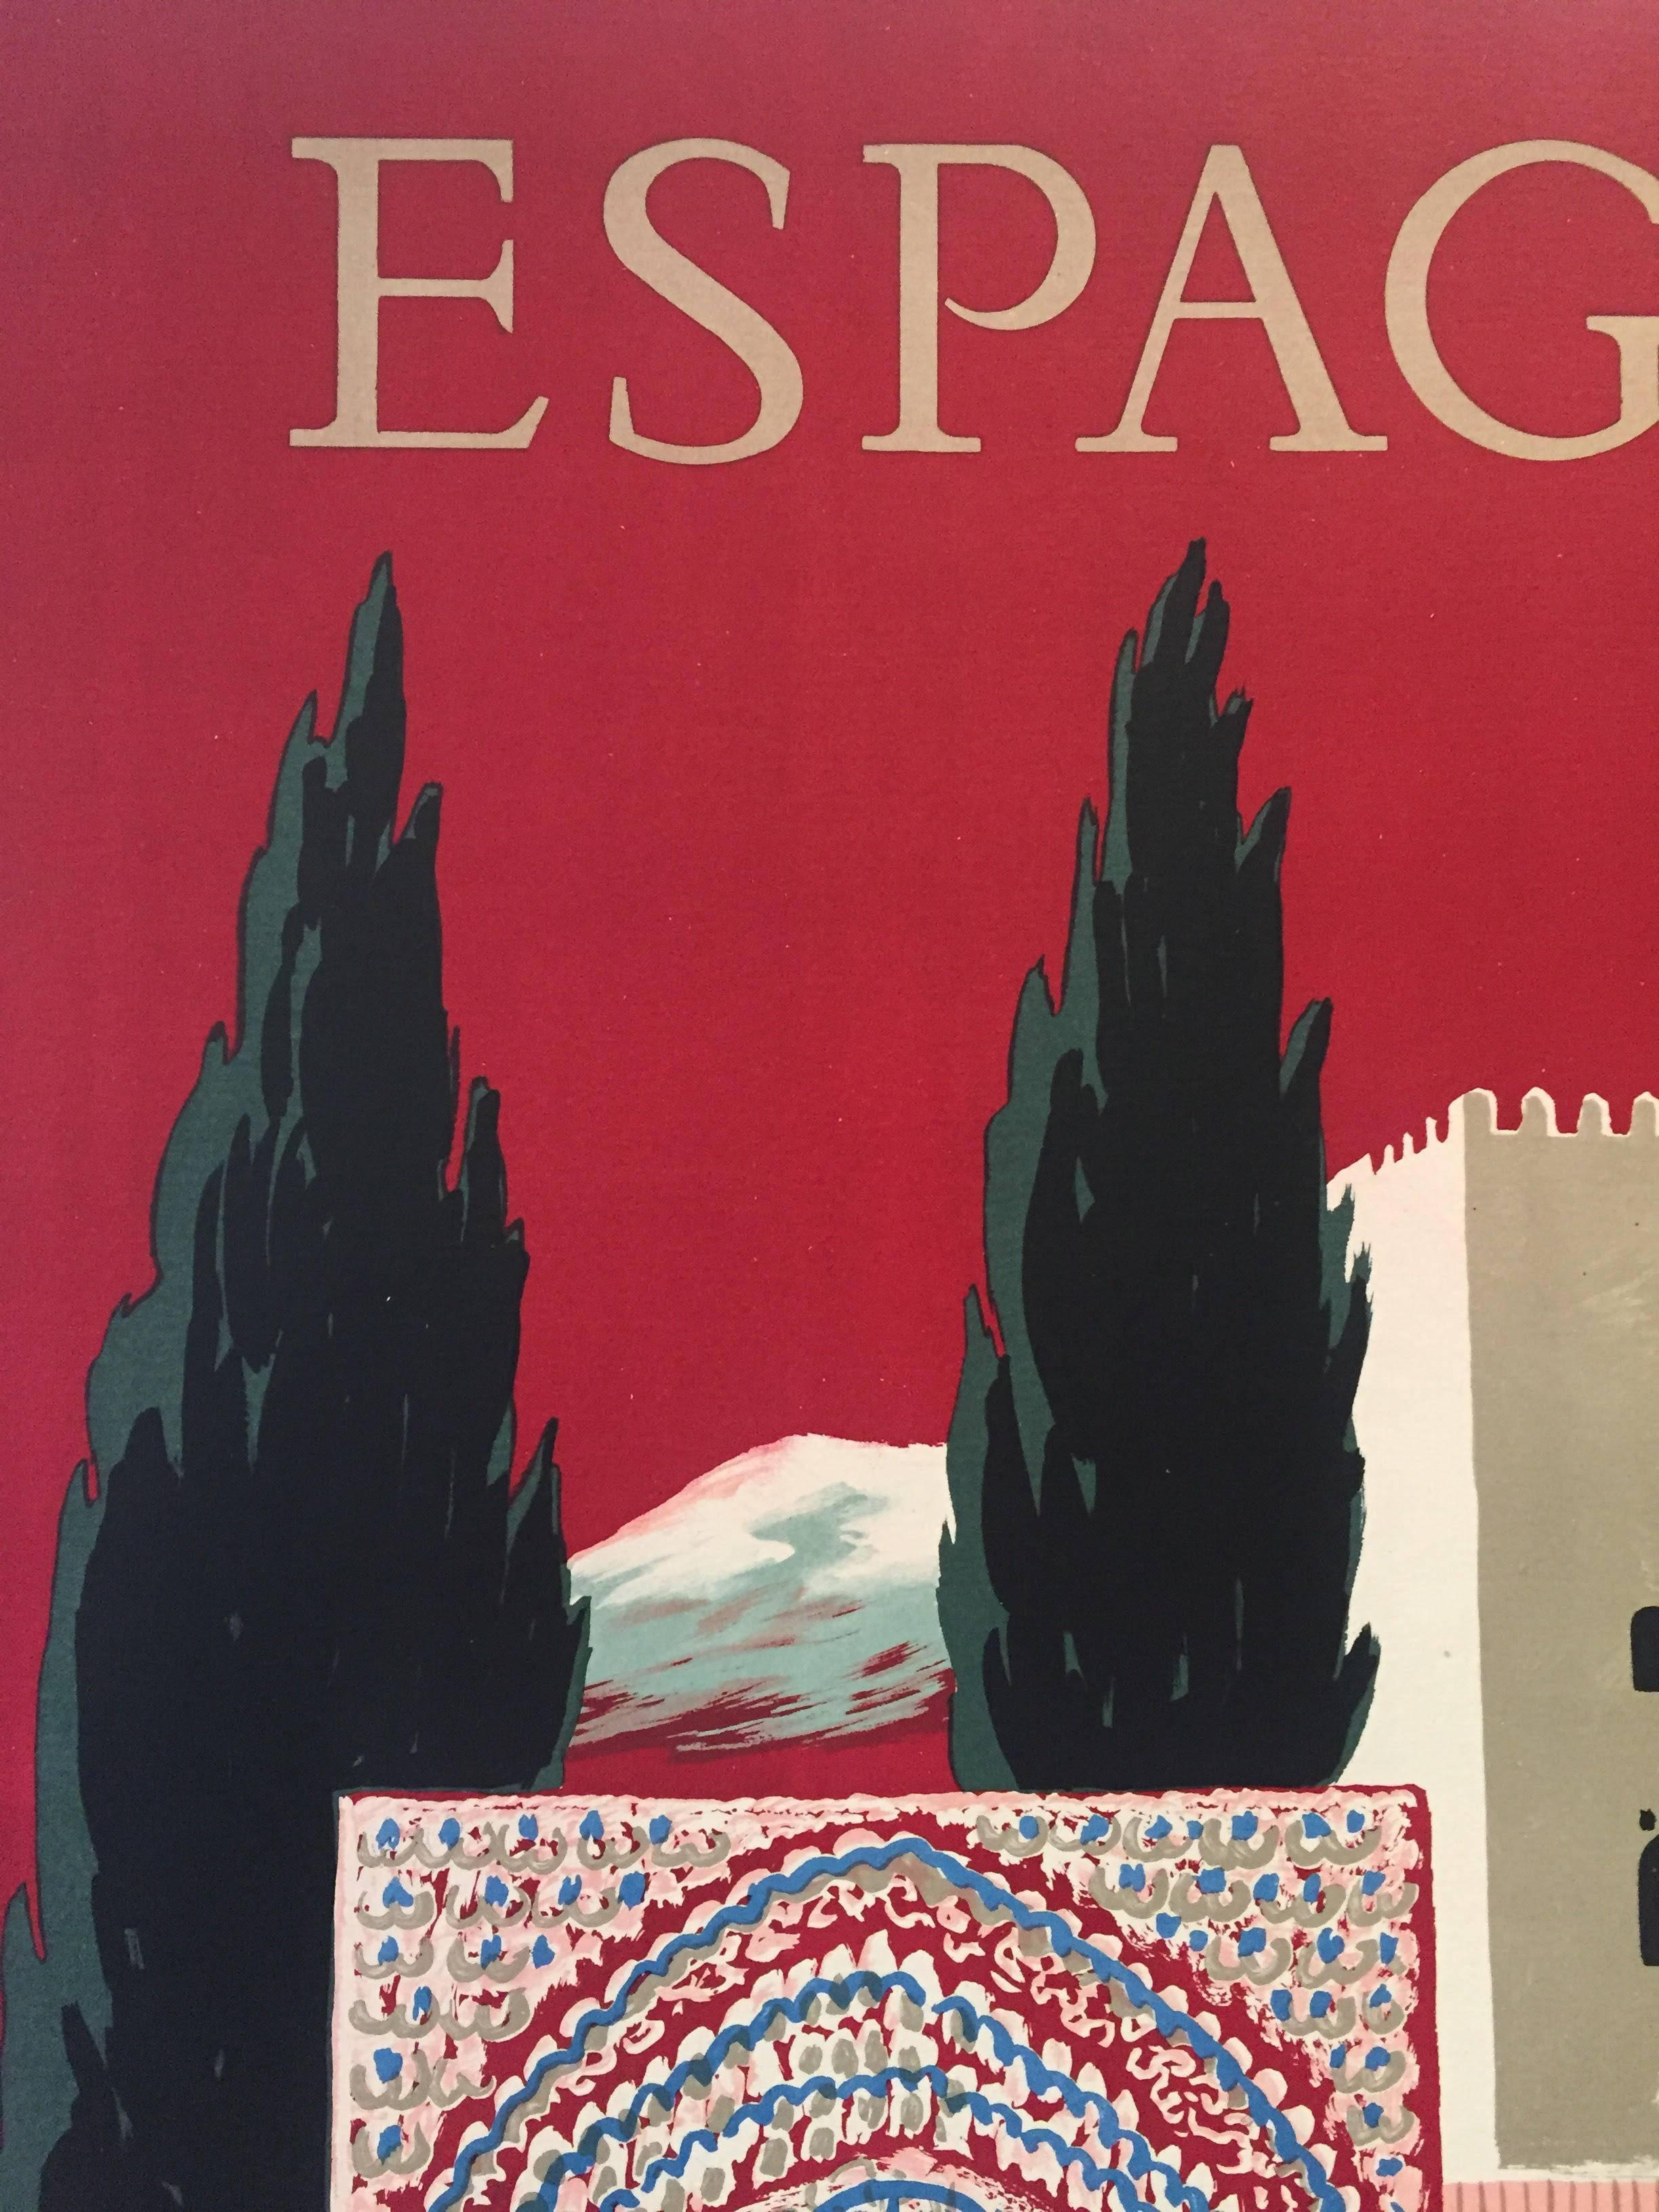 Original Vintage French Poster, Spain Travel, Espagne by Villemot 1